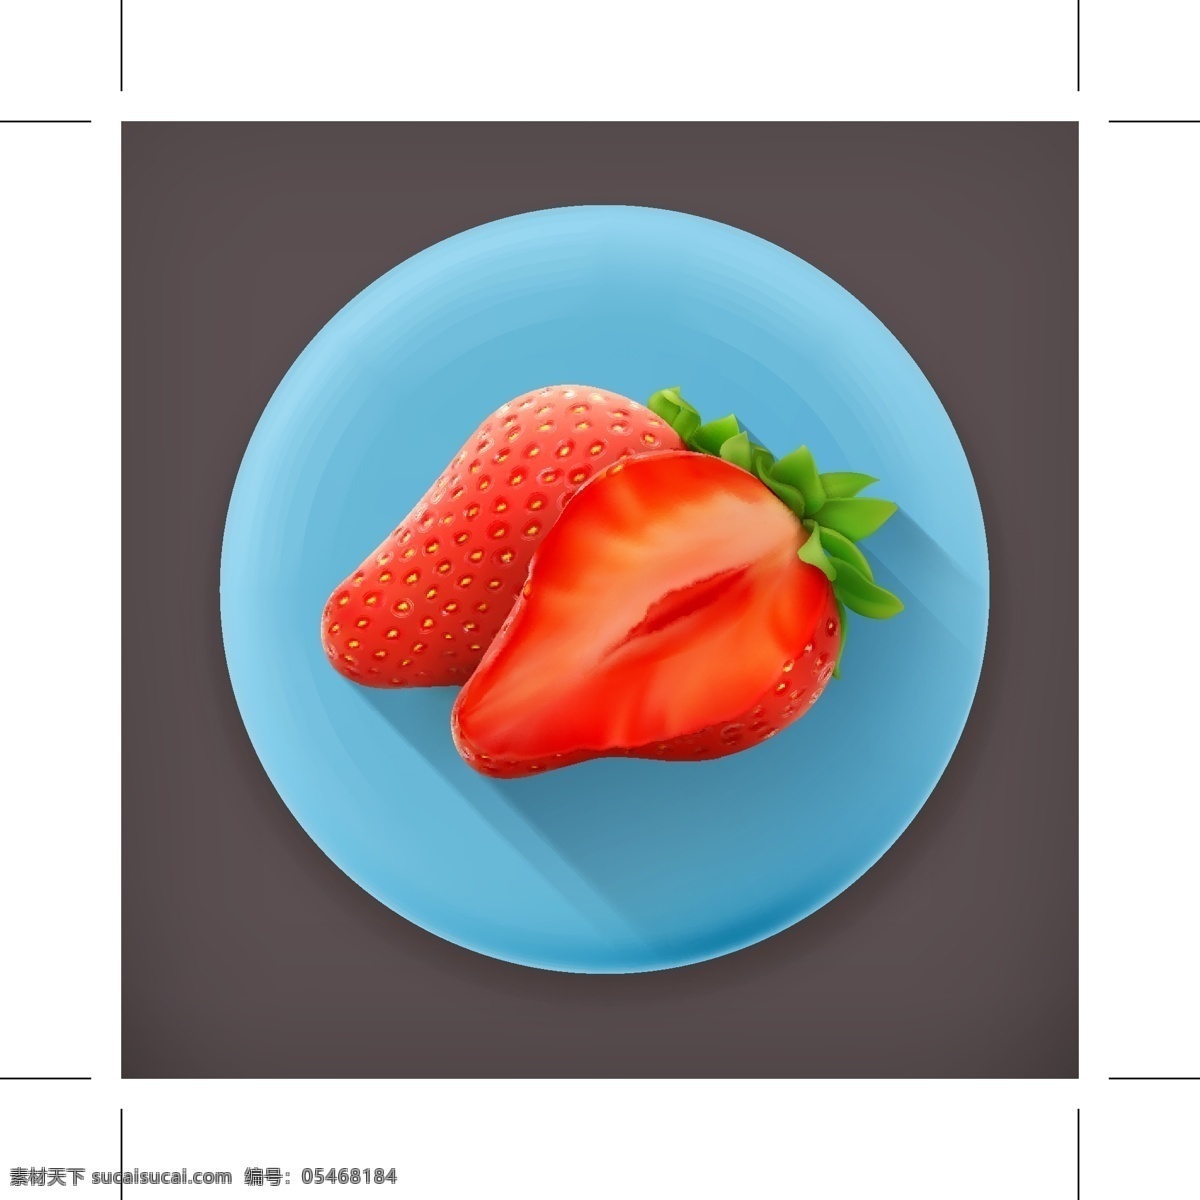 红色草莓图标 红色 草莓 矢量素材 设计素材 背景素材